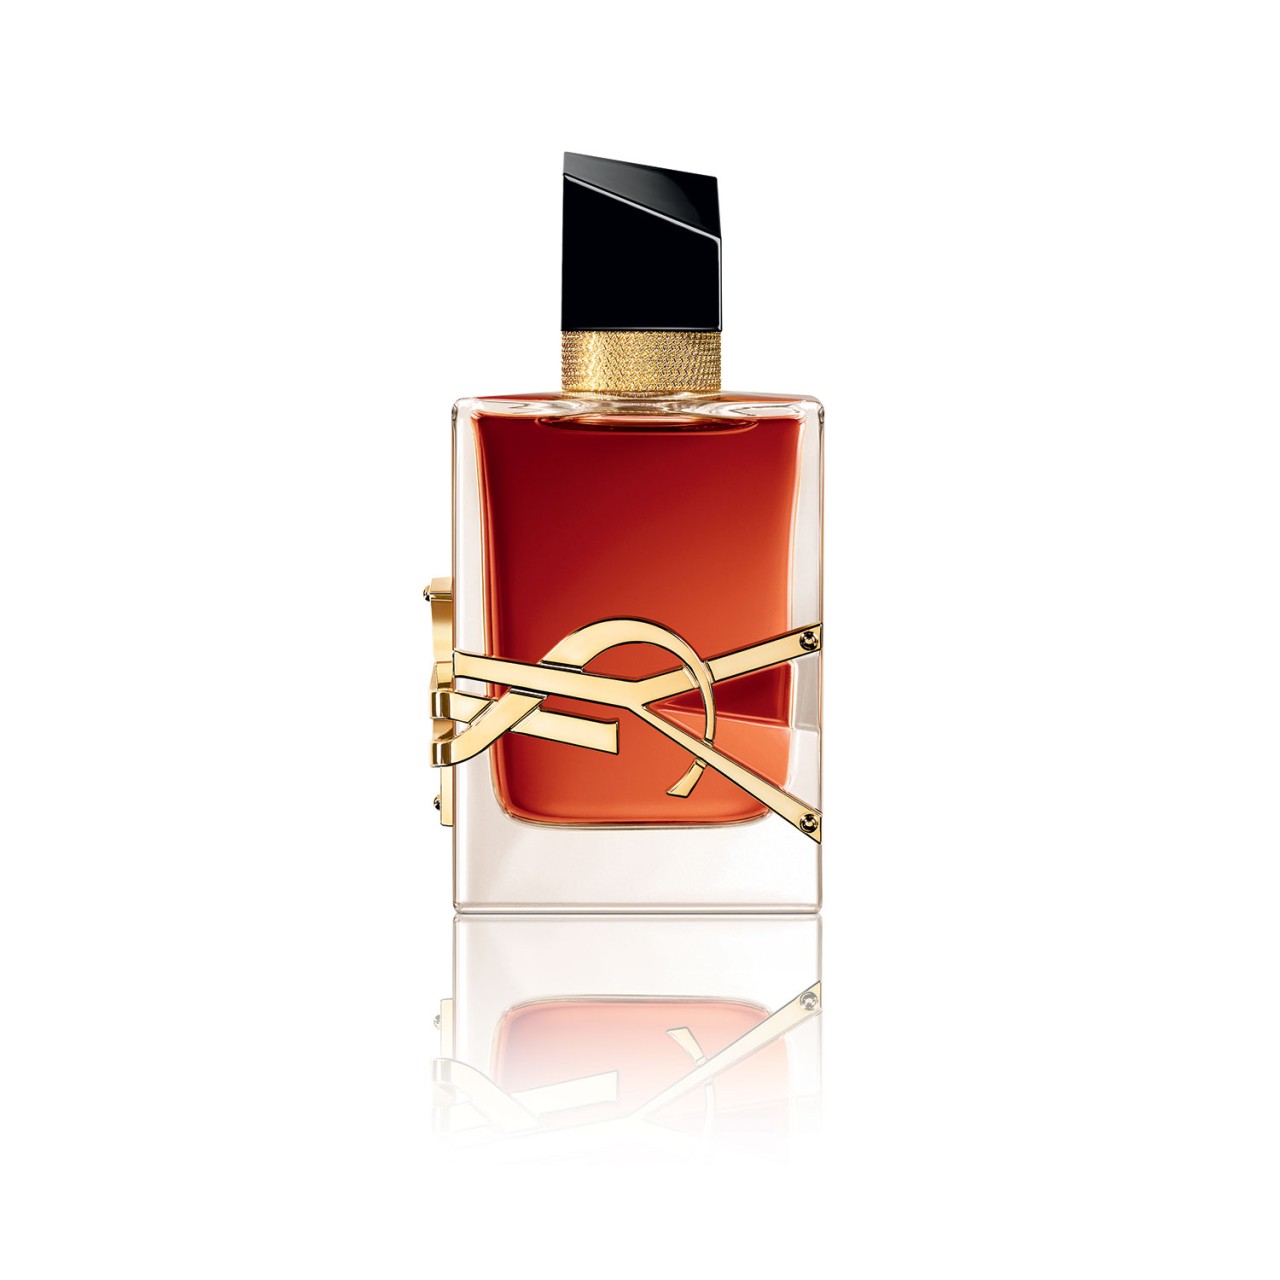 Yves Saint Laurent  Libre Le Parfum